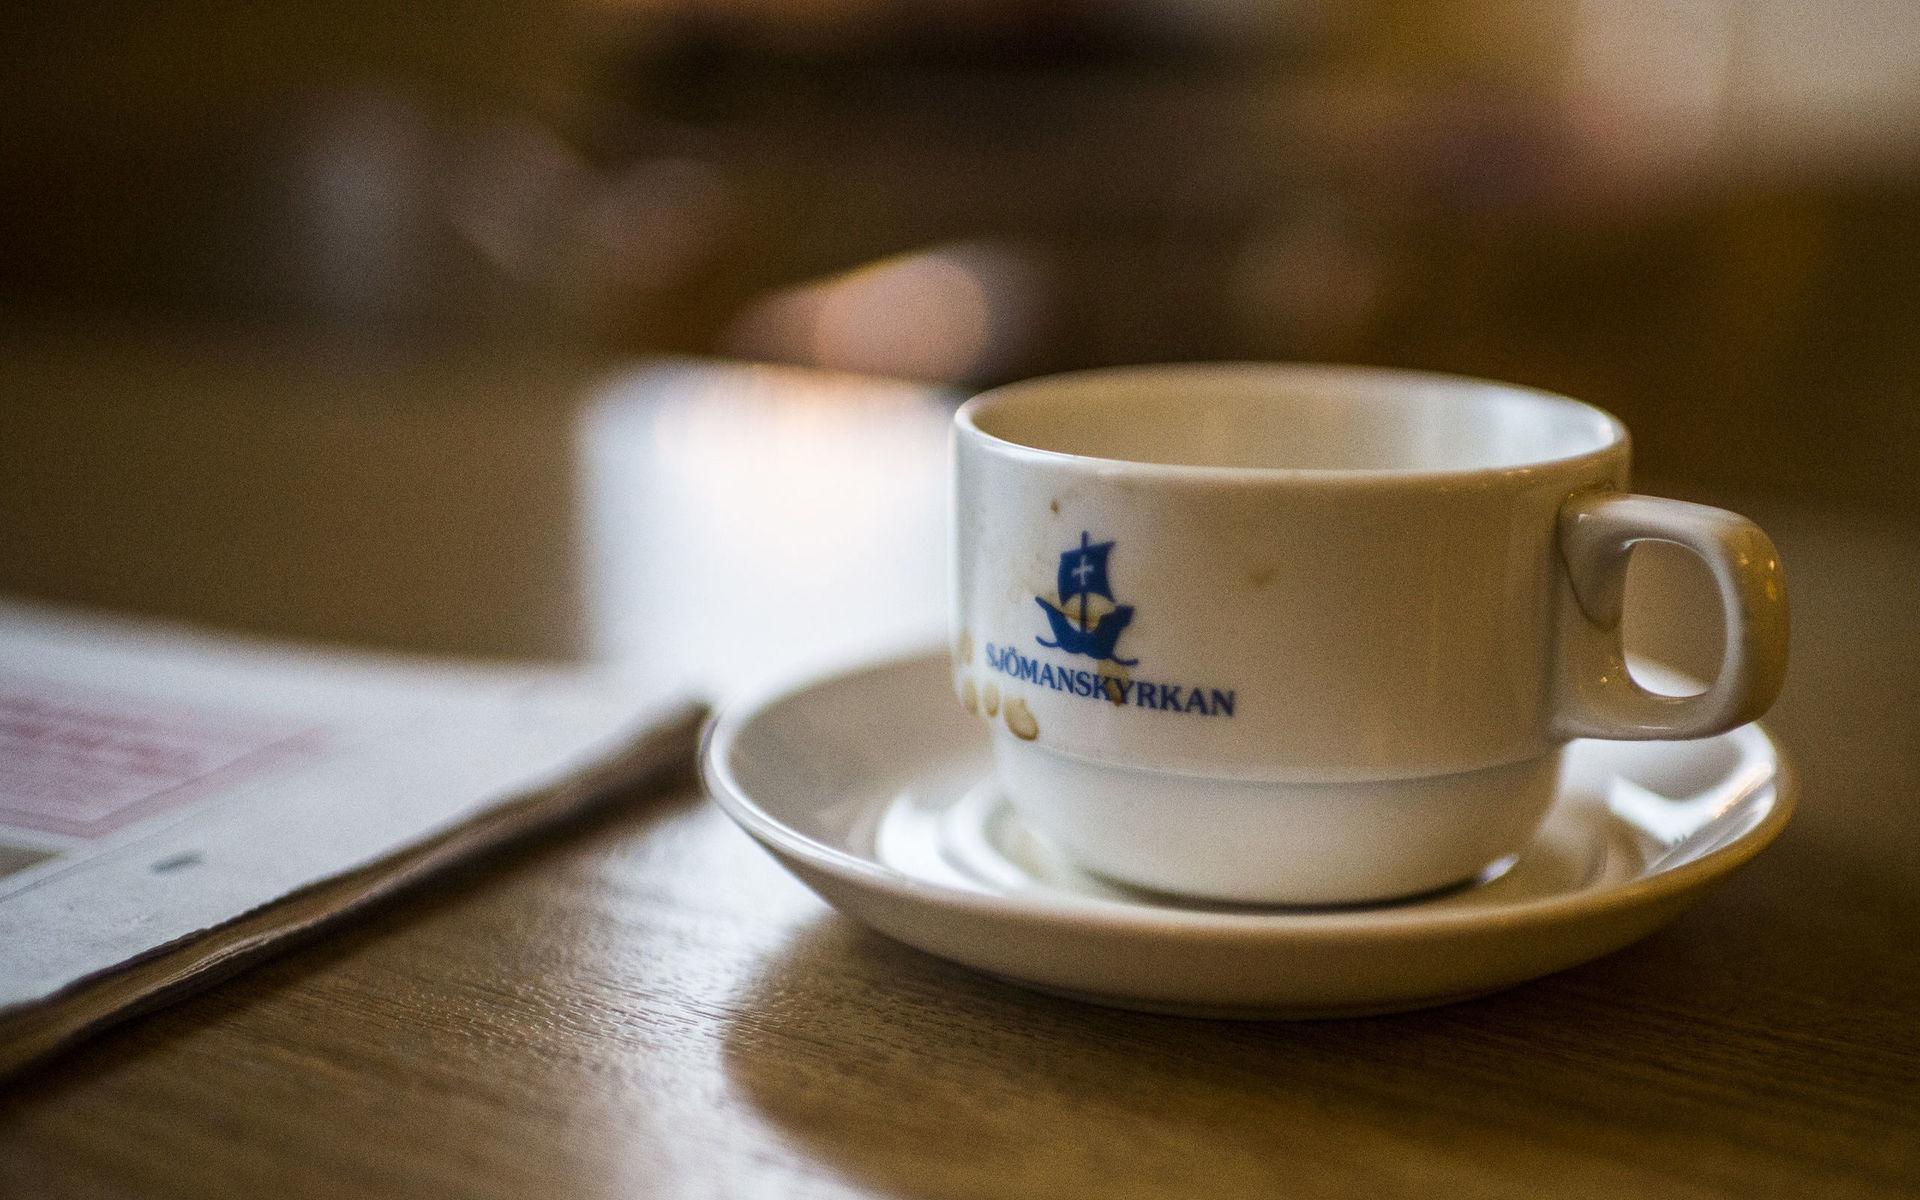 Café restaurang Kuling har serverat gästerna på eget porslin: vitt med restaurangens namn textat i marinblått.